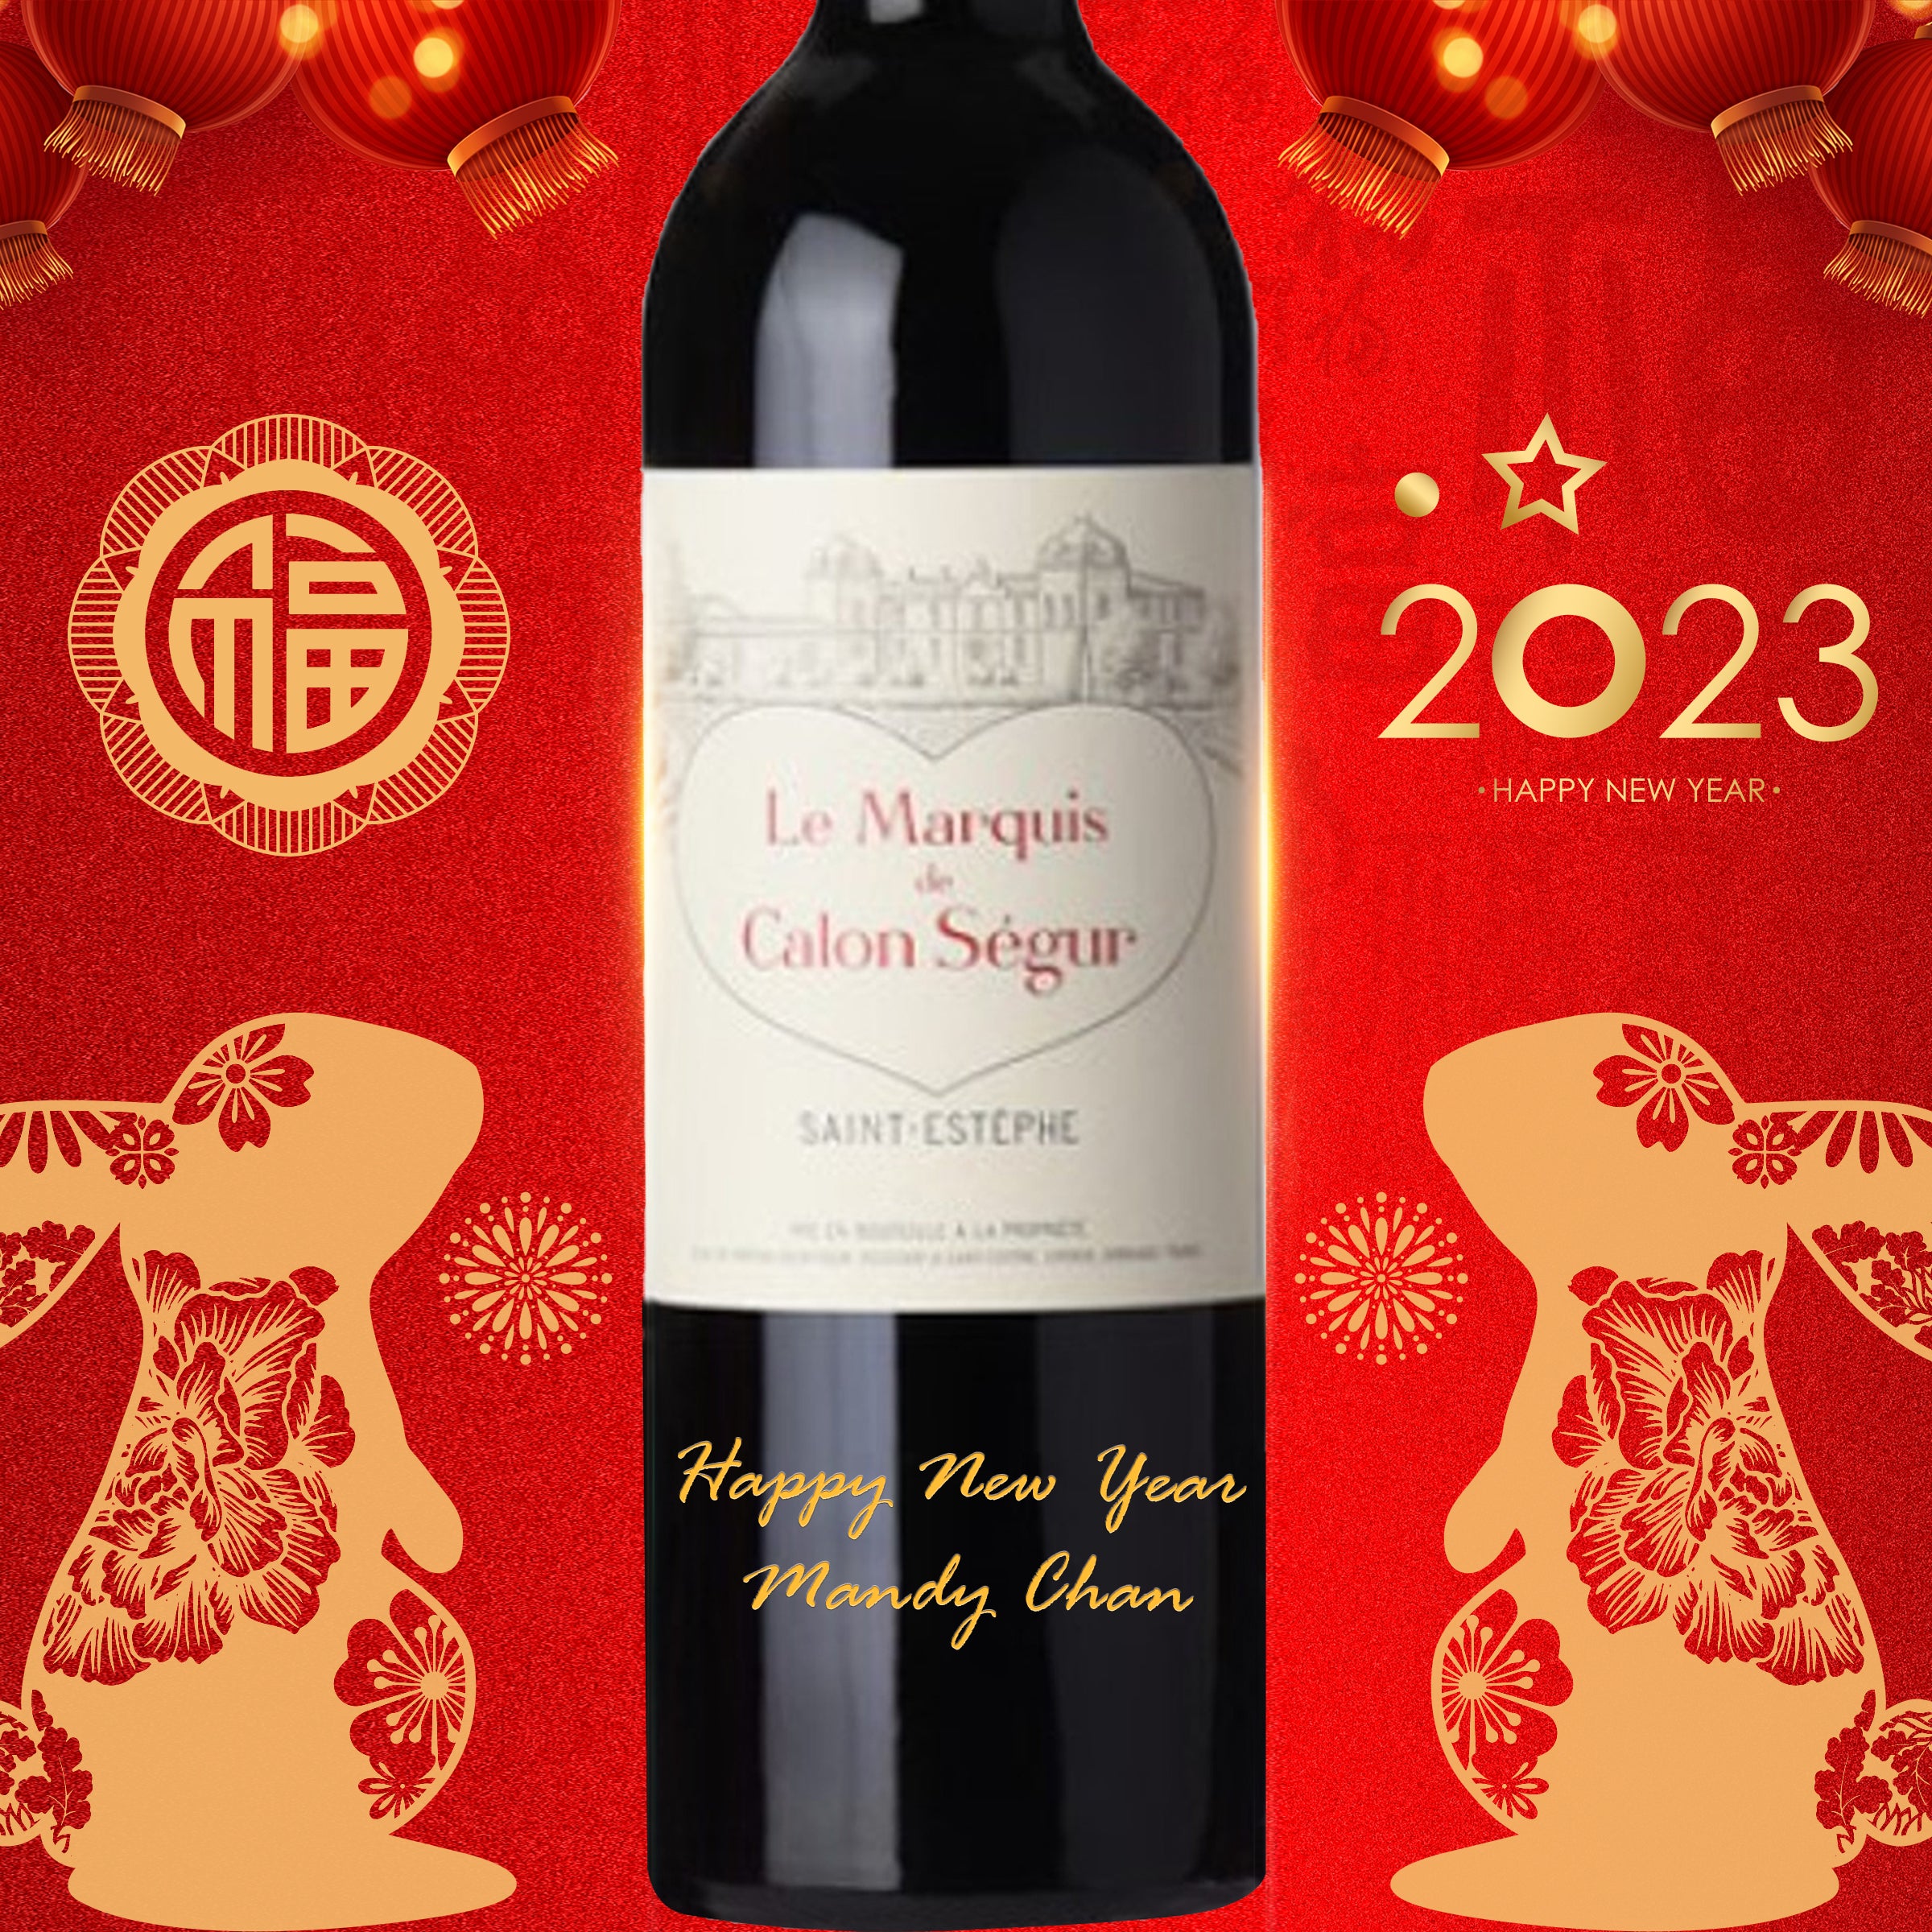 2023祝賀酒| Le Marquis de Calon Ségur 2016 with Engraving 2016凱隆世家副牌 - Design Your Own Wine